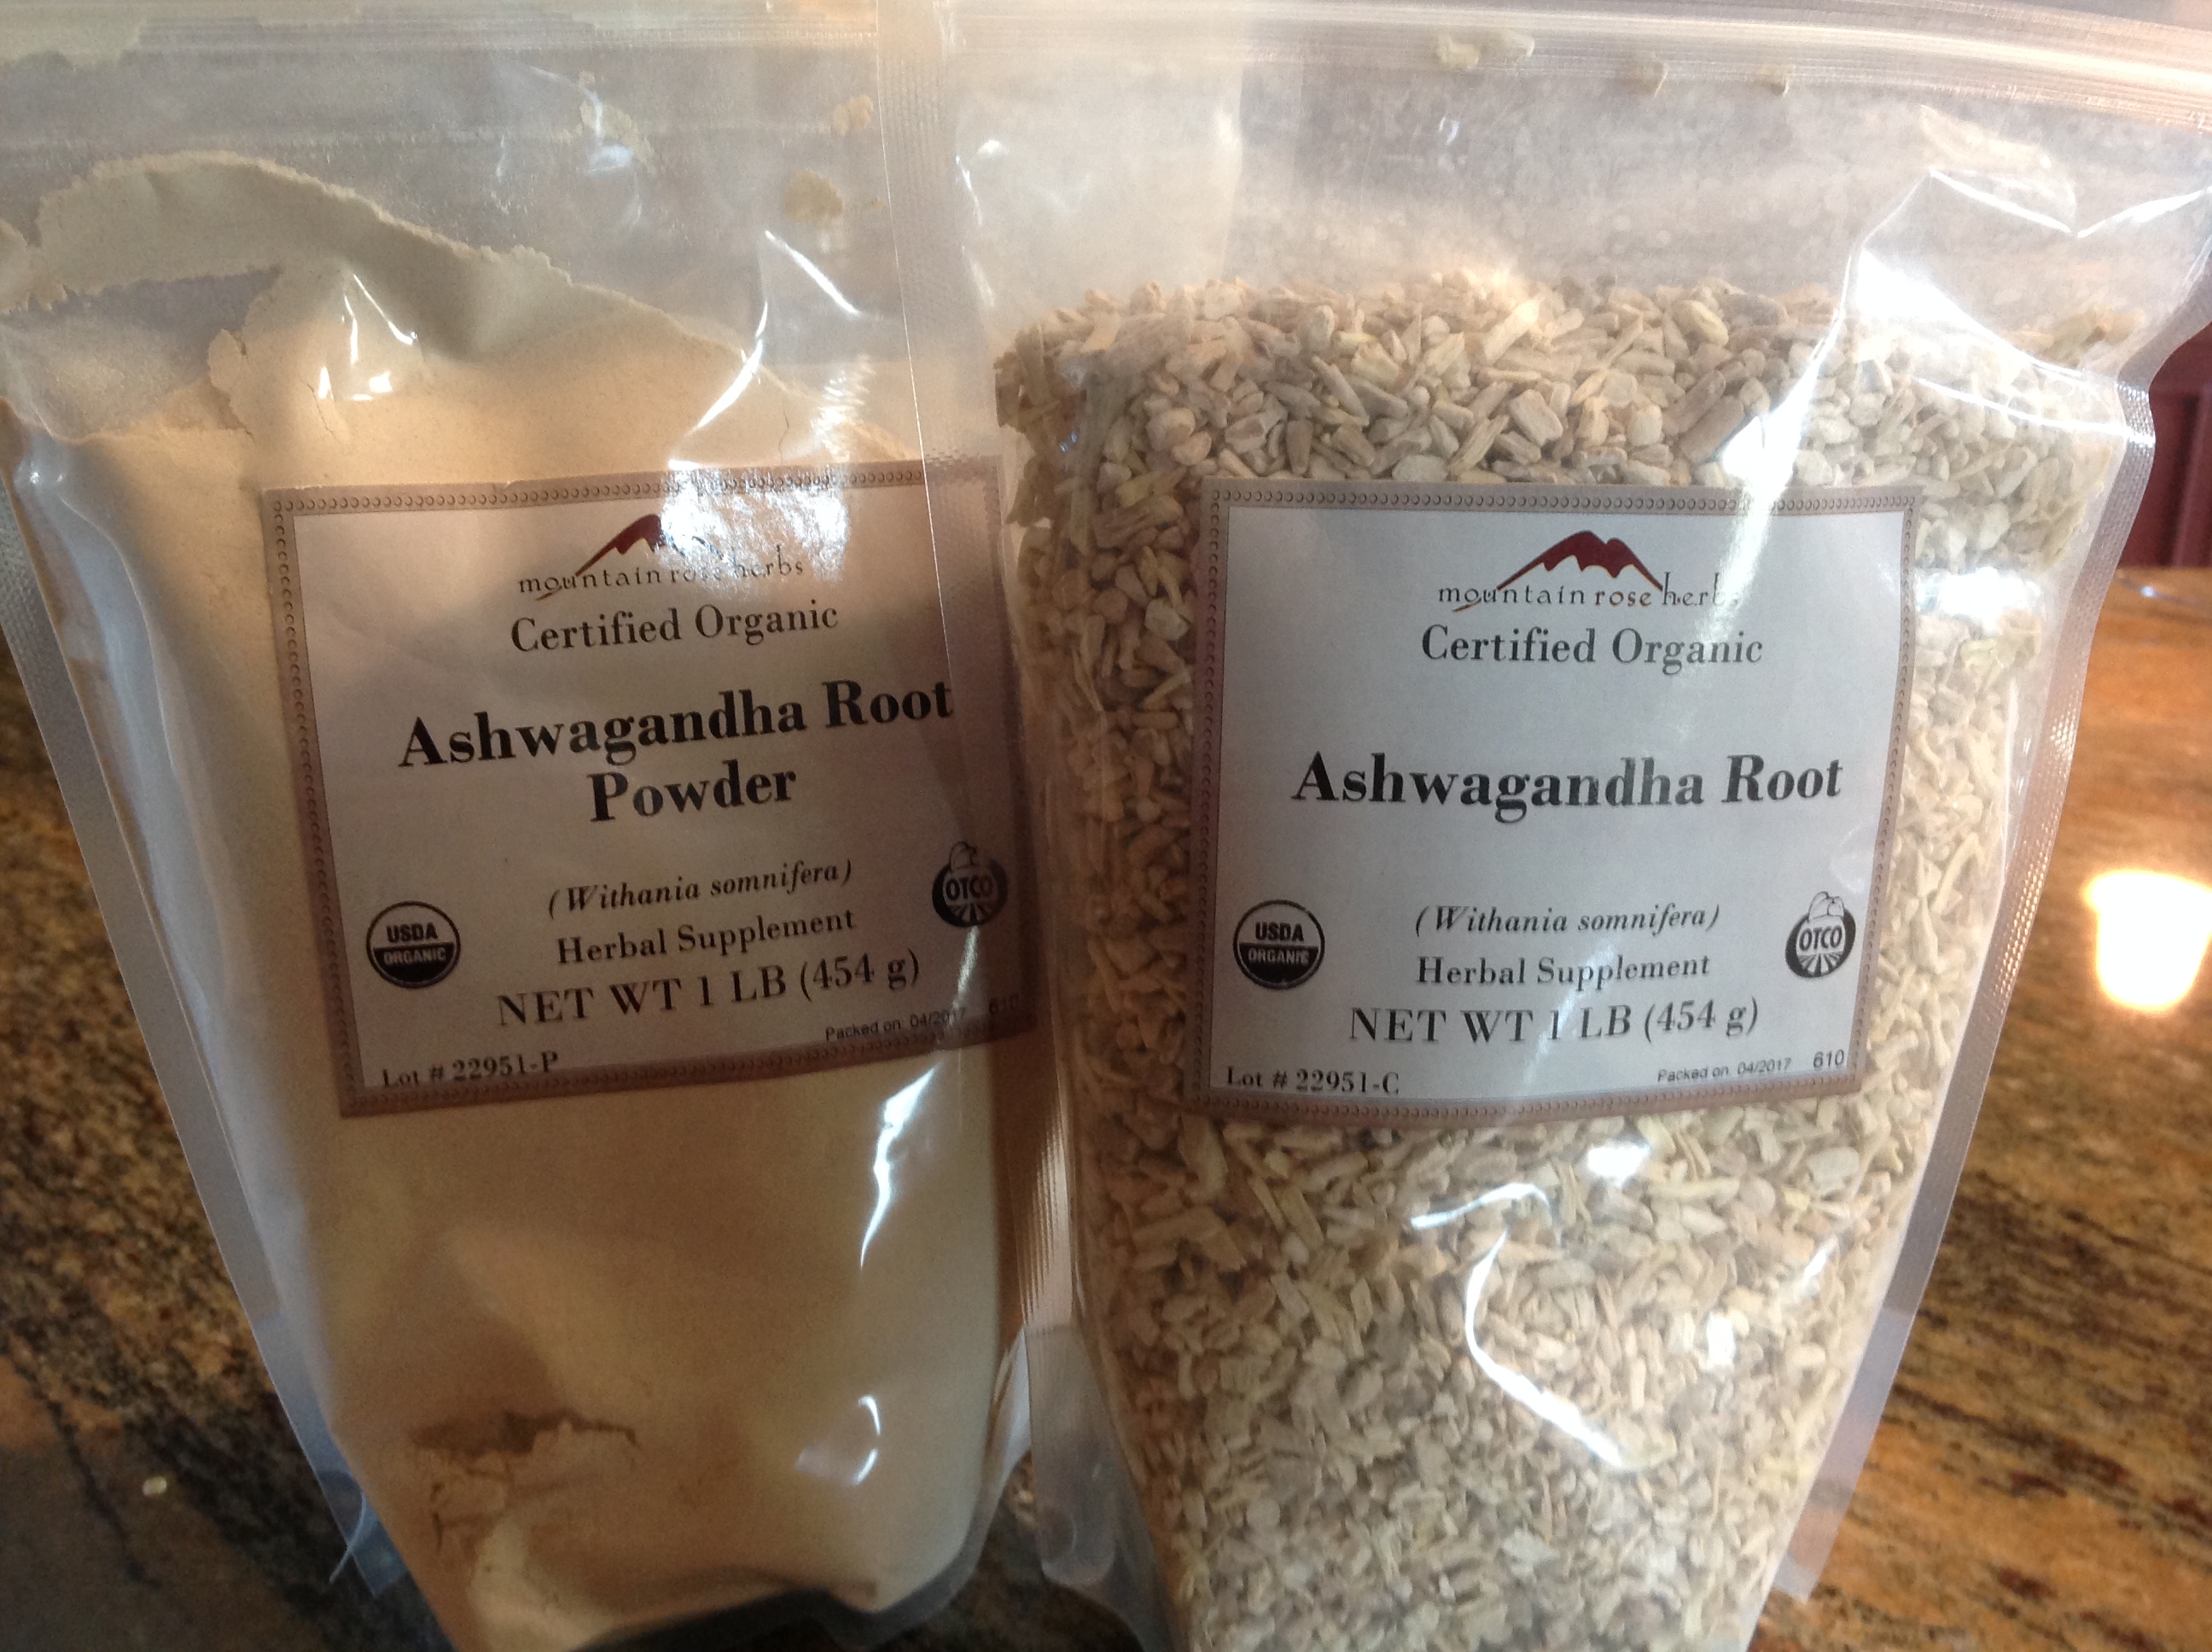 Ashwagandha powder and root